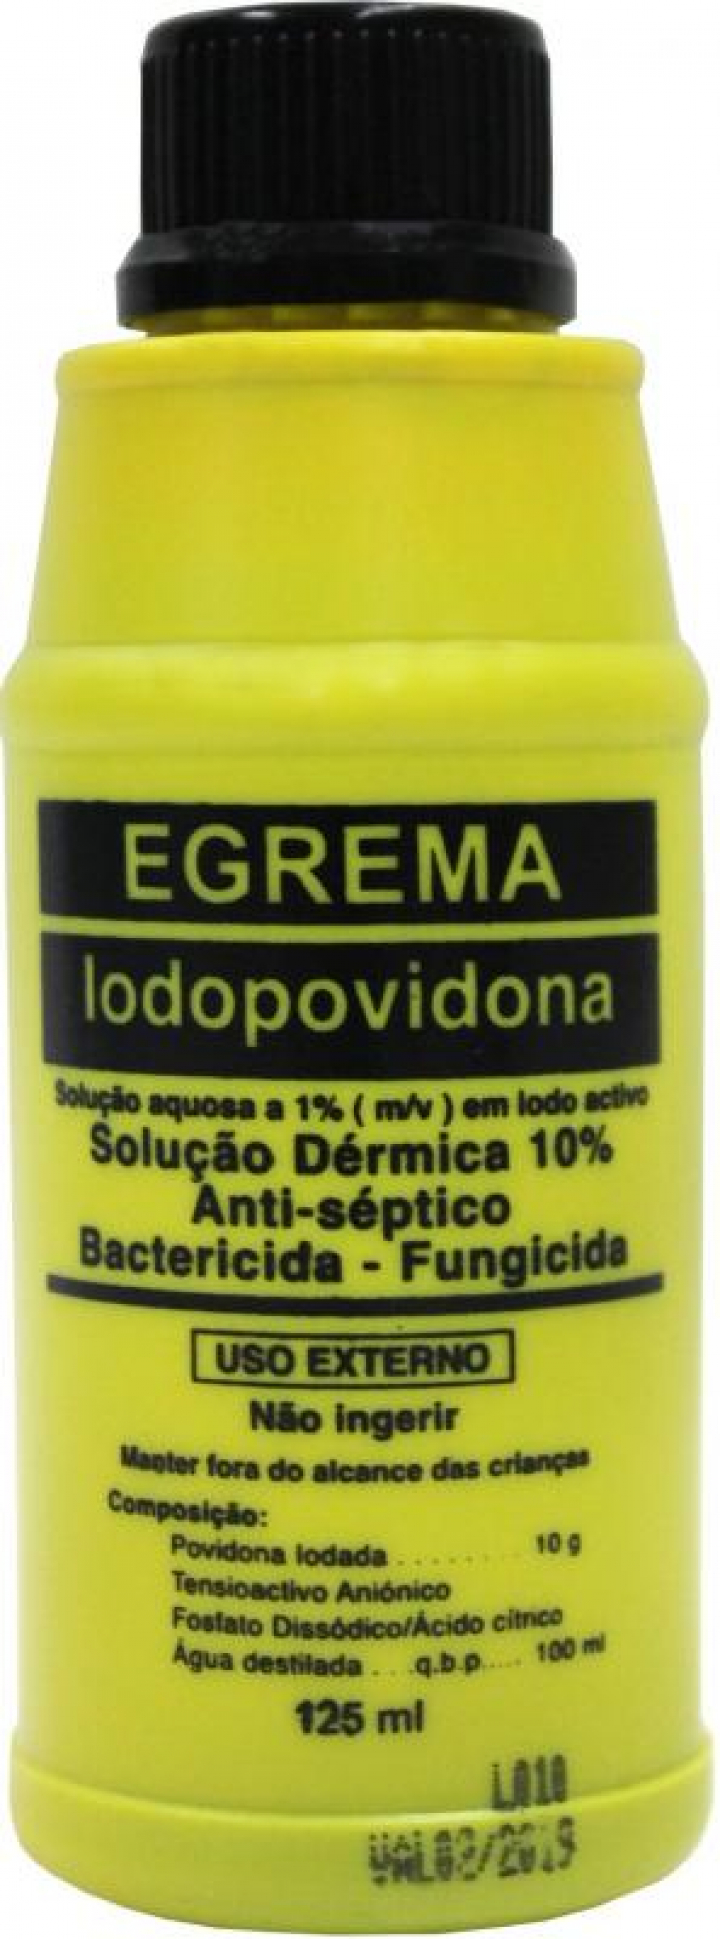 Iodopovidona dérmica - solução anti-séptica, bactericida e fungicida 10% 125ml